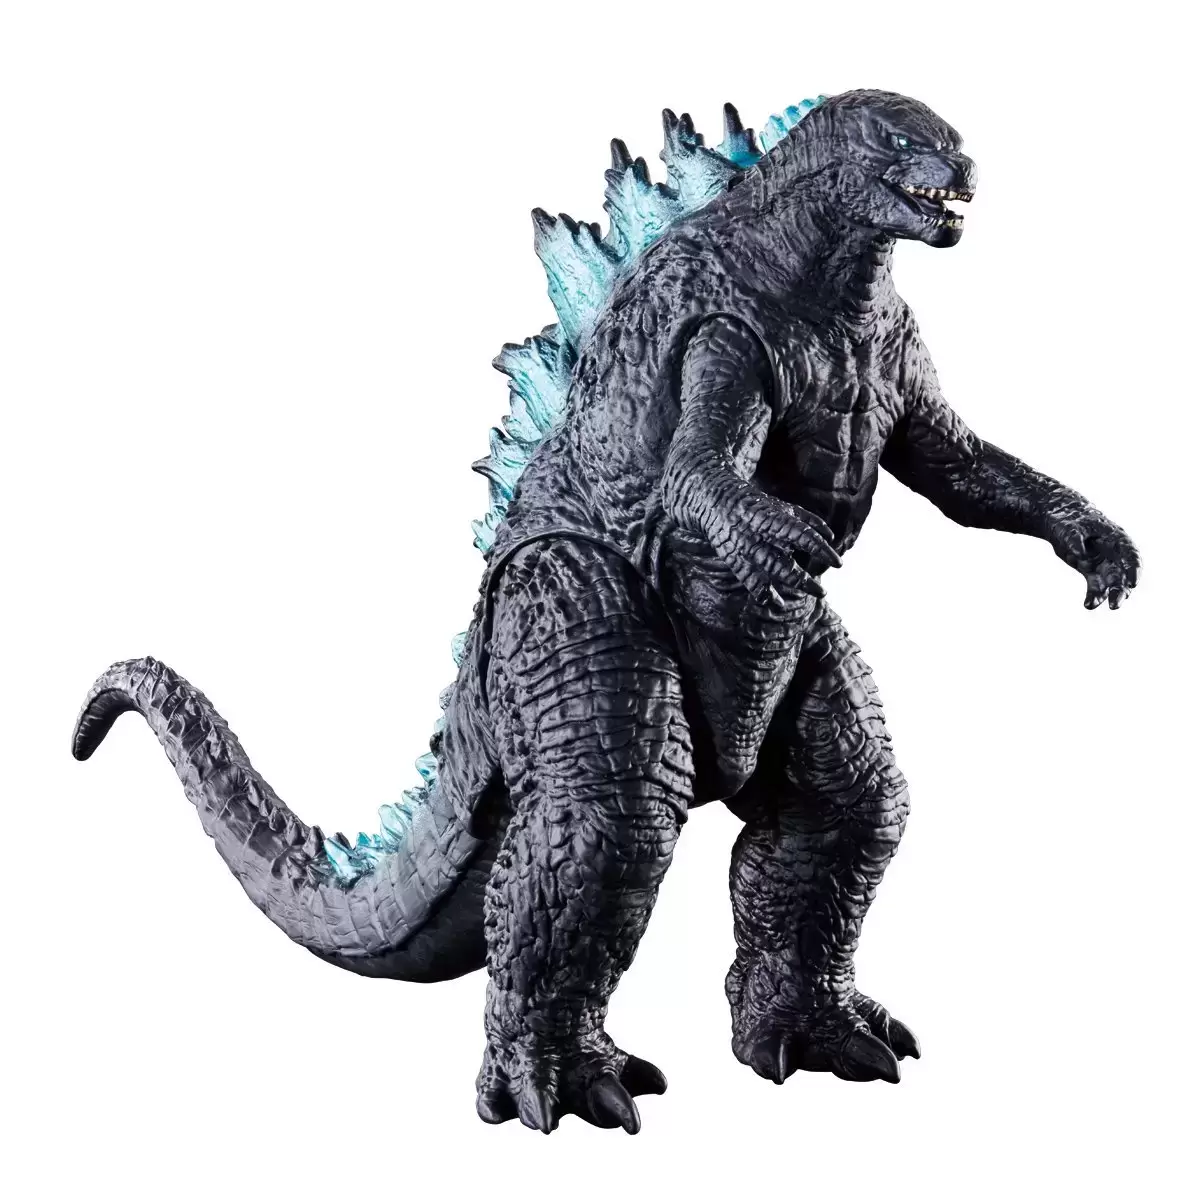 Bandai - Movie Monster Series - Godzilla: King of the Monsters - Godzilla